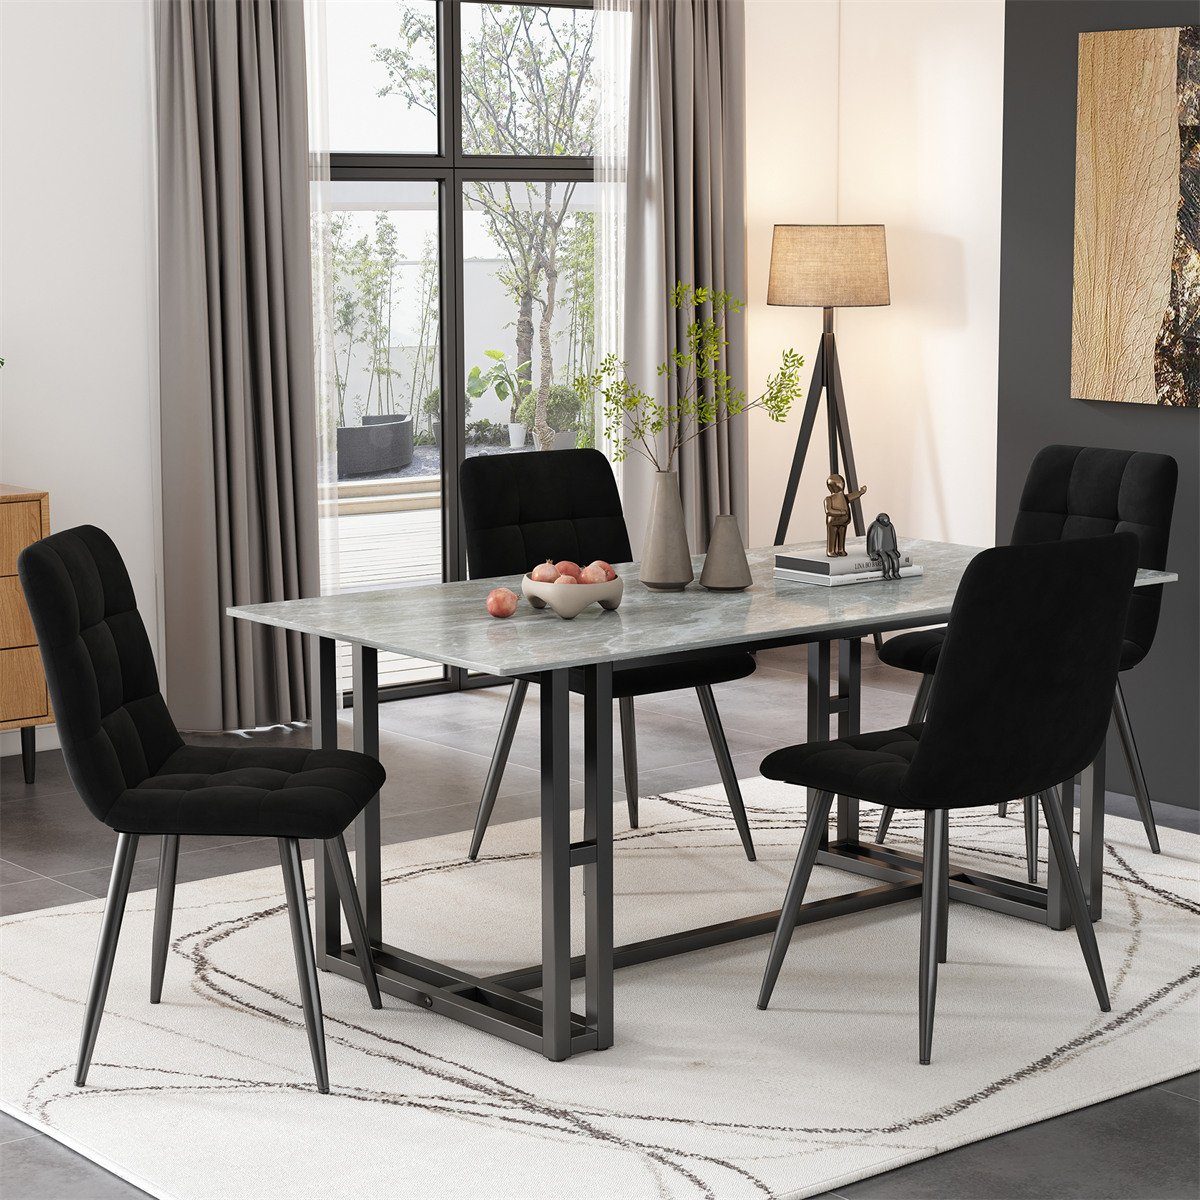 XDeer Esszimmerstuhl 4er Set Esszimmerstühle,Polsterstuhl Küchenstuhl mit Rückenlehne, Sitzfläche aus Samt Gestell aus Metall,Leicht zu montieren Schwarz